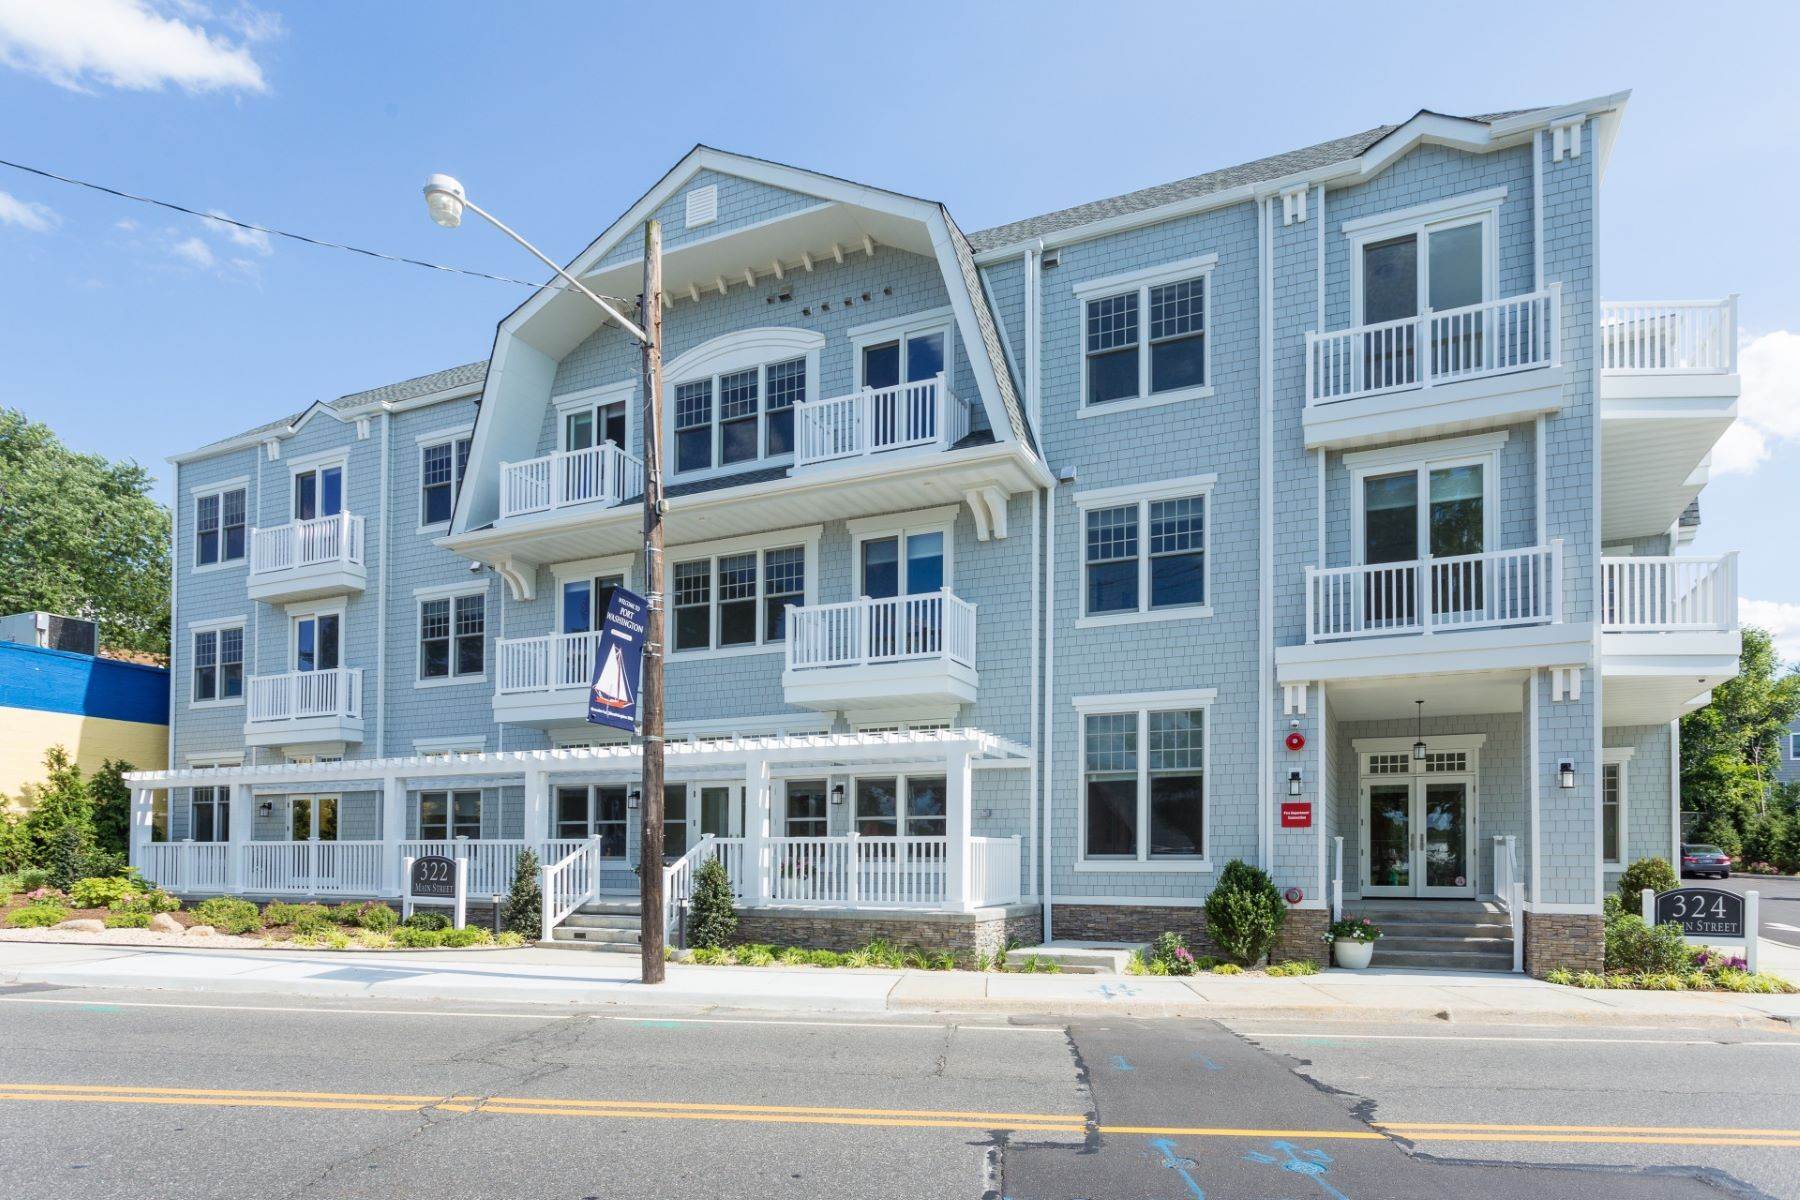 Apartments в 324 Main Street, Port Washington, Ny, 11050 324 Main Street, Unit# 2E Port Washington, Нью-Йорк 11050 Соединенные Штаты